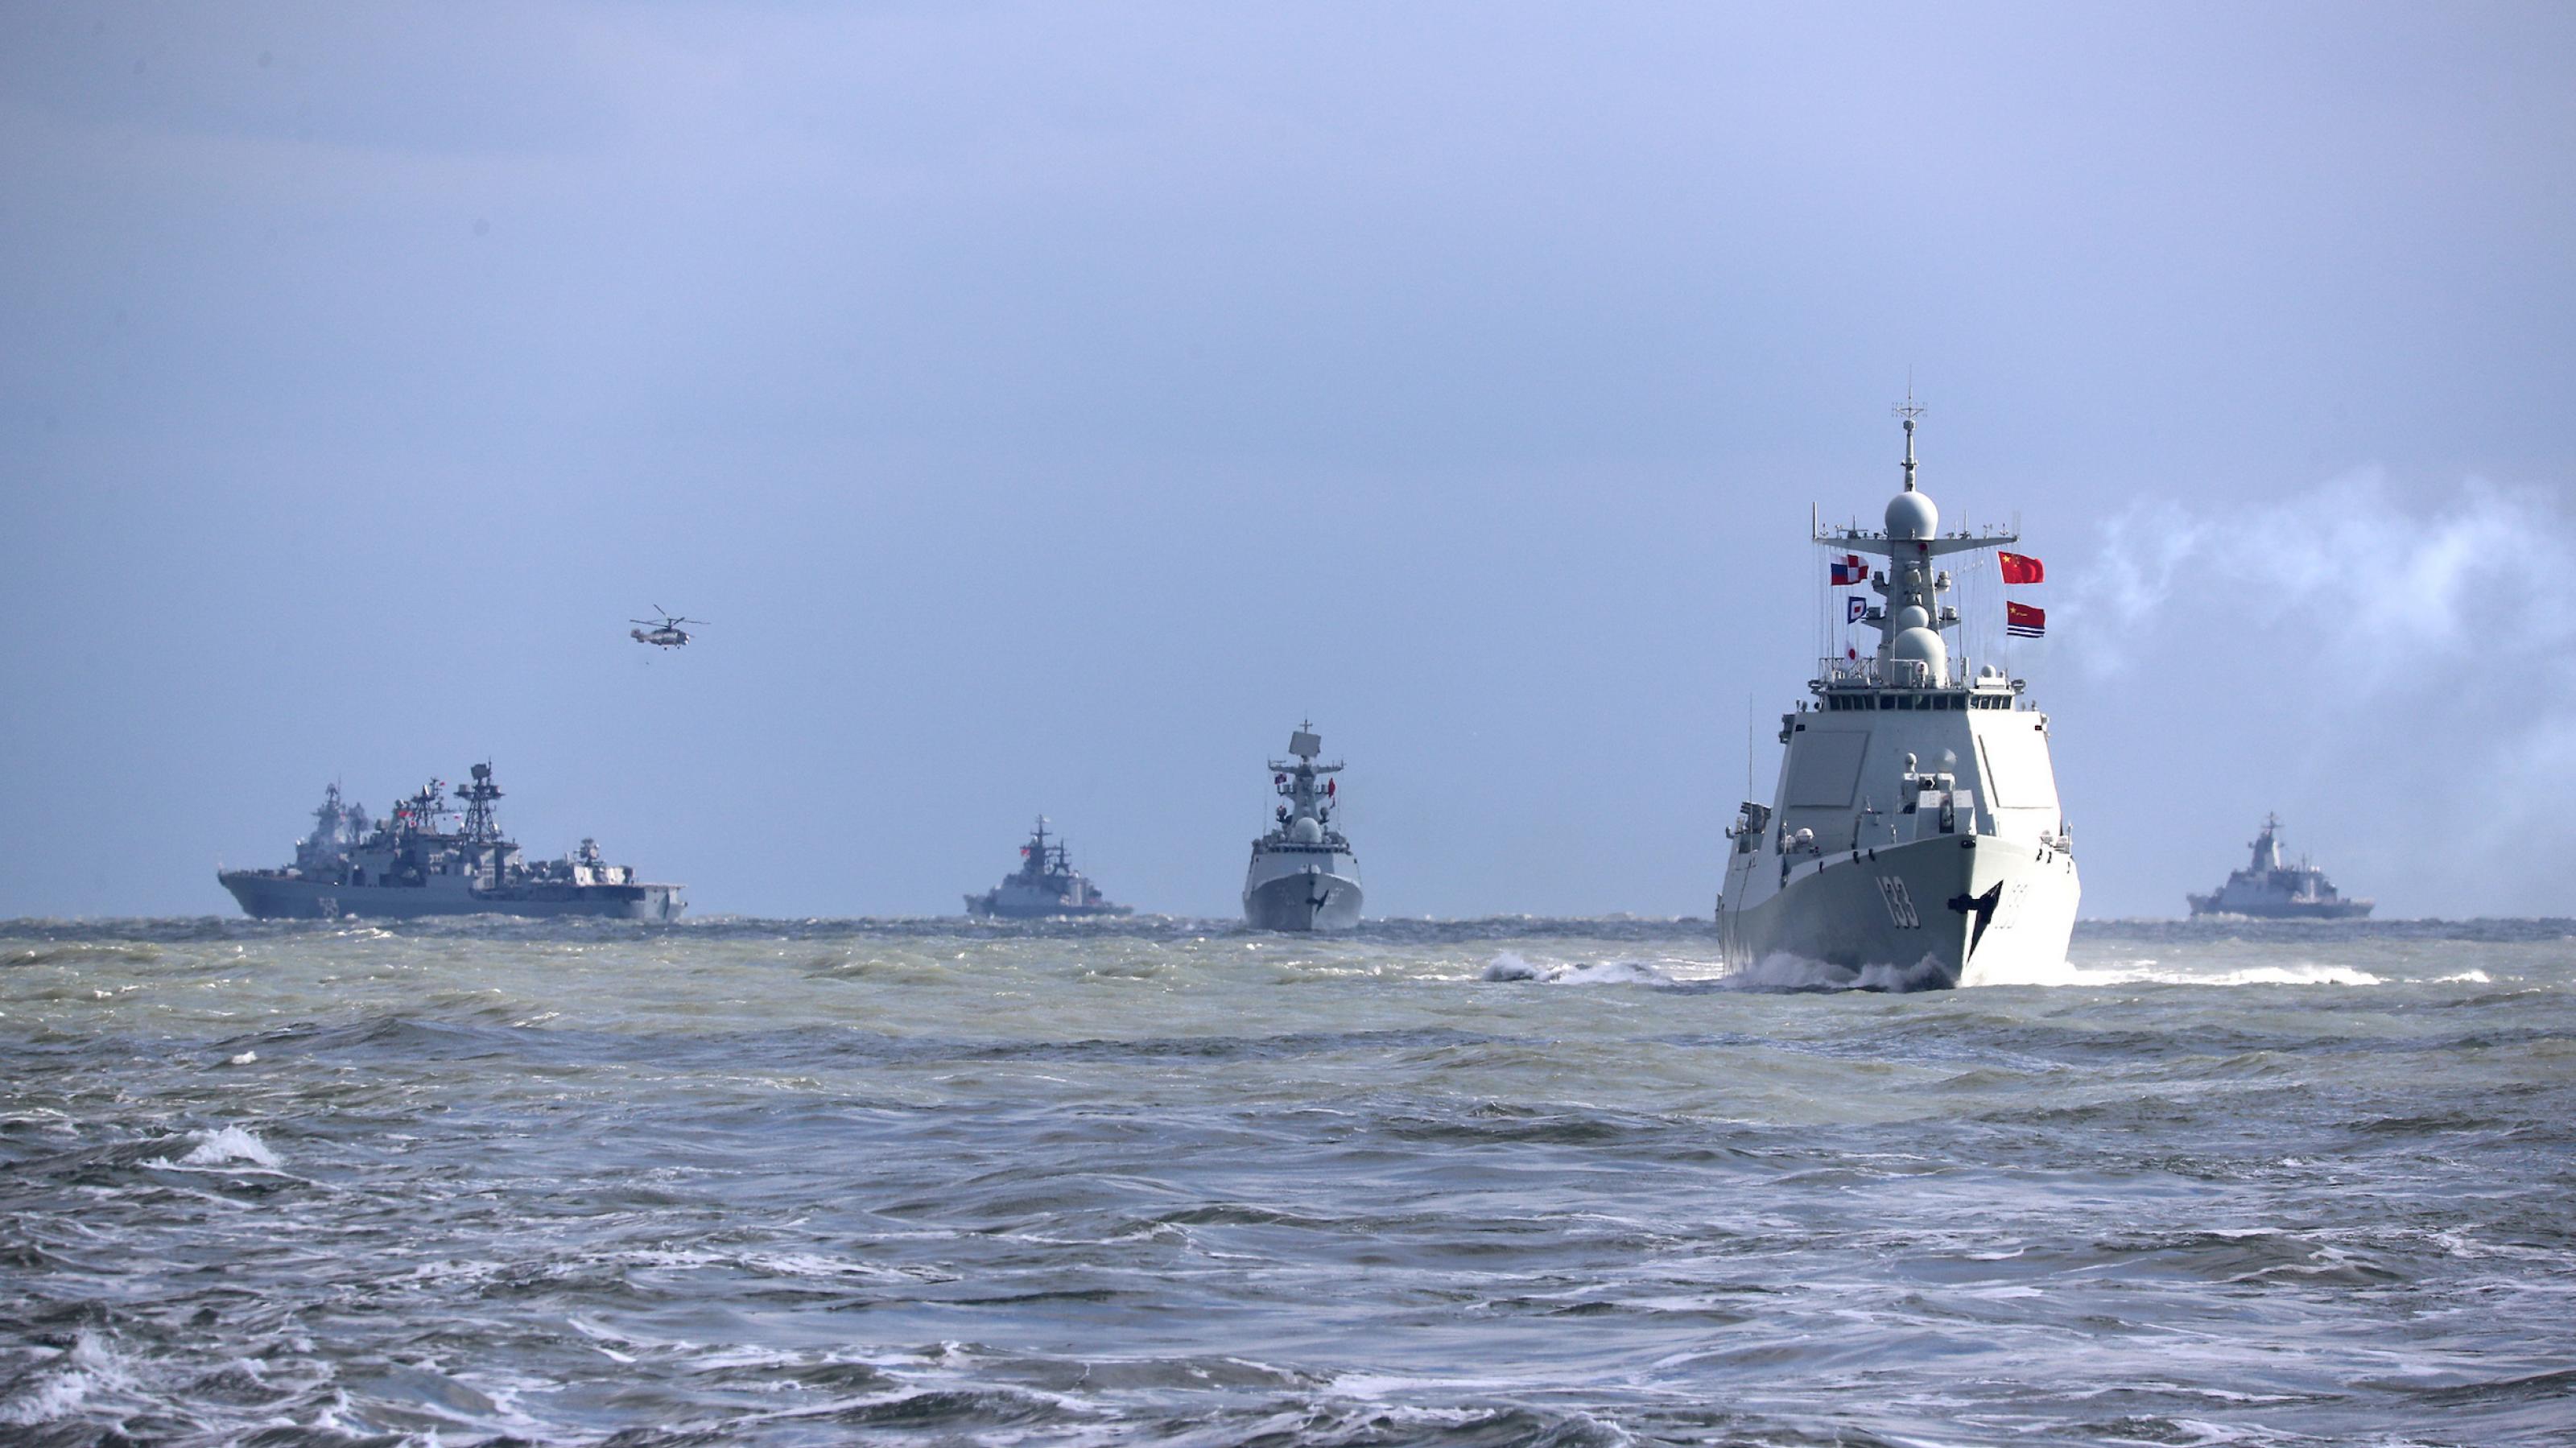 ;ehrere Kriegsschiffe und ein Helikopter auf dem offenen Meer.